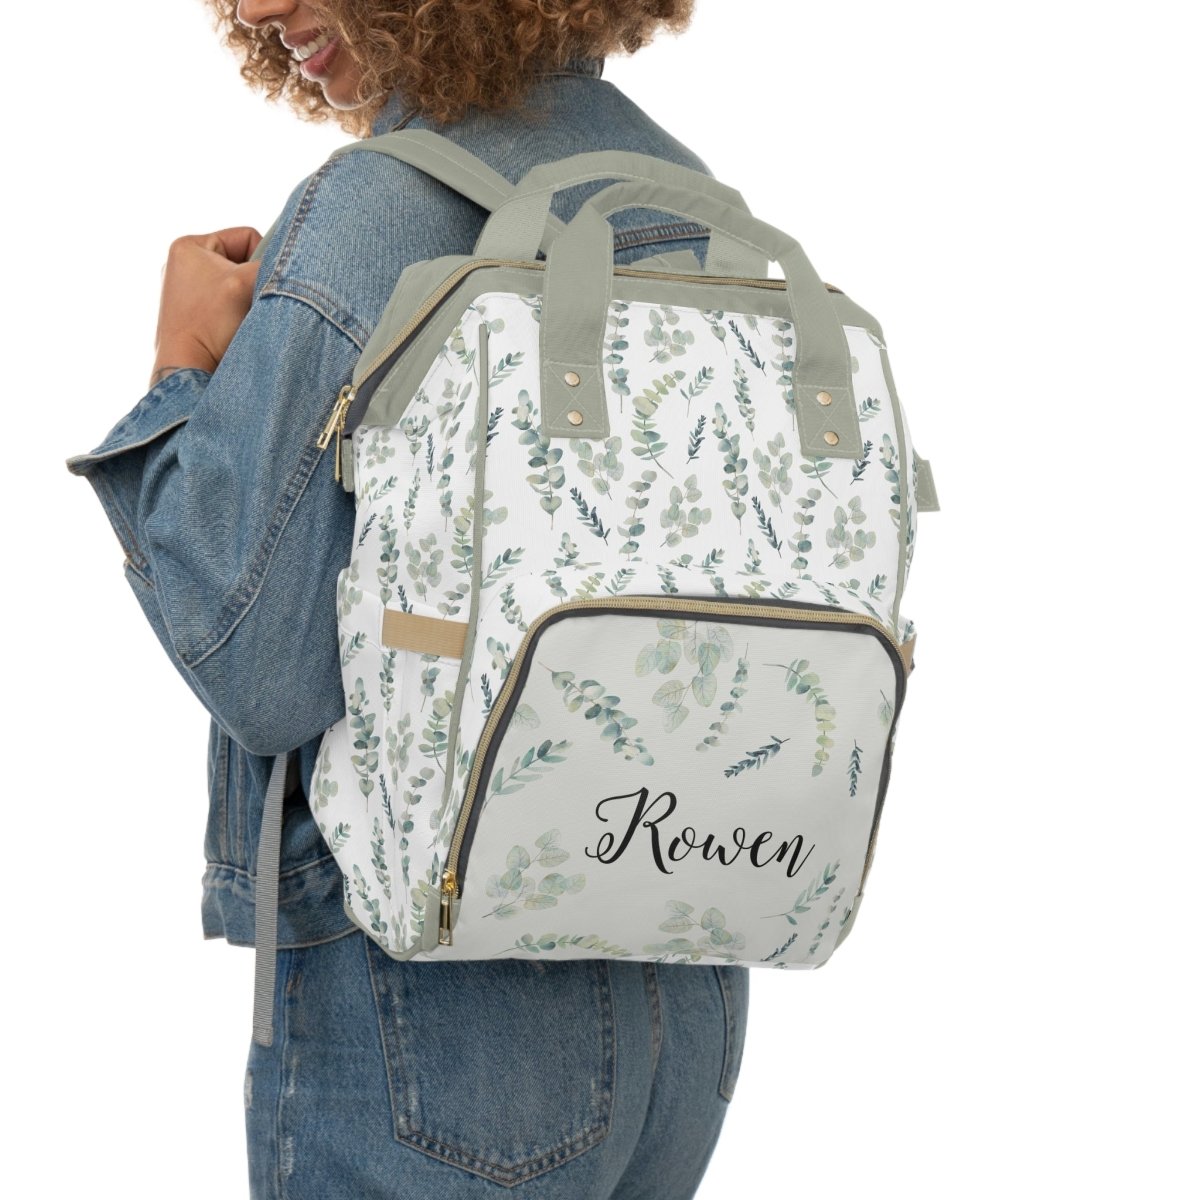 Going Green Personalized Backpack Diaper Bag - gender_boy, gender_girl, gender_neutral